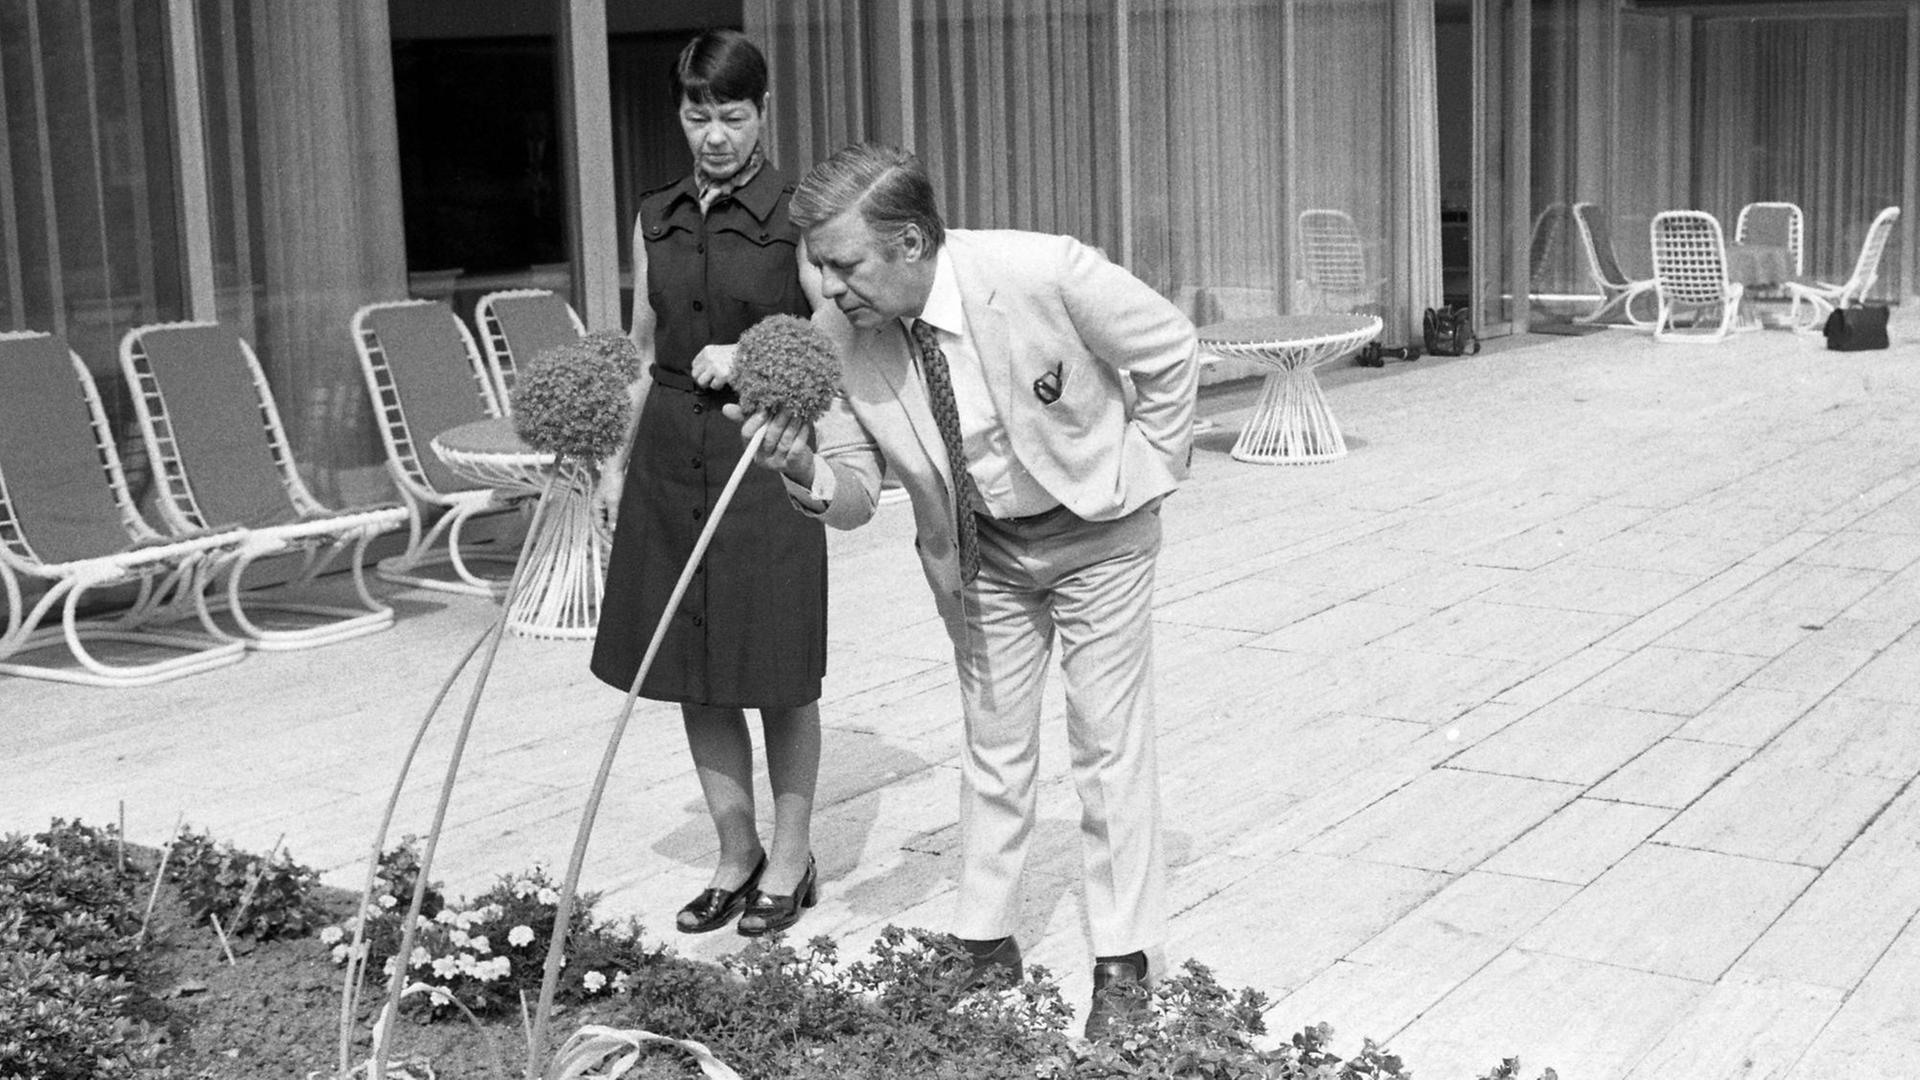 Bundeskanzler Helmut Schmidt und seine Frau Hannelore Loki im Garten des Kanzlerbungalows 1975, er riecht an einer Blume. Der Kanzlerbungalow war das Wohn- und Empfangsgebäude des Bundeskanzlers in Bonn.